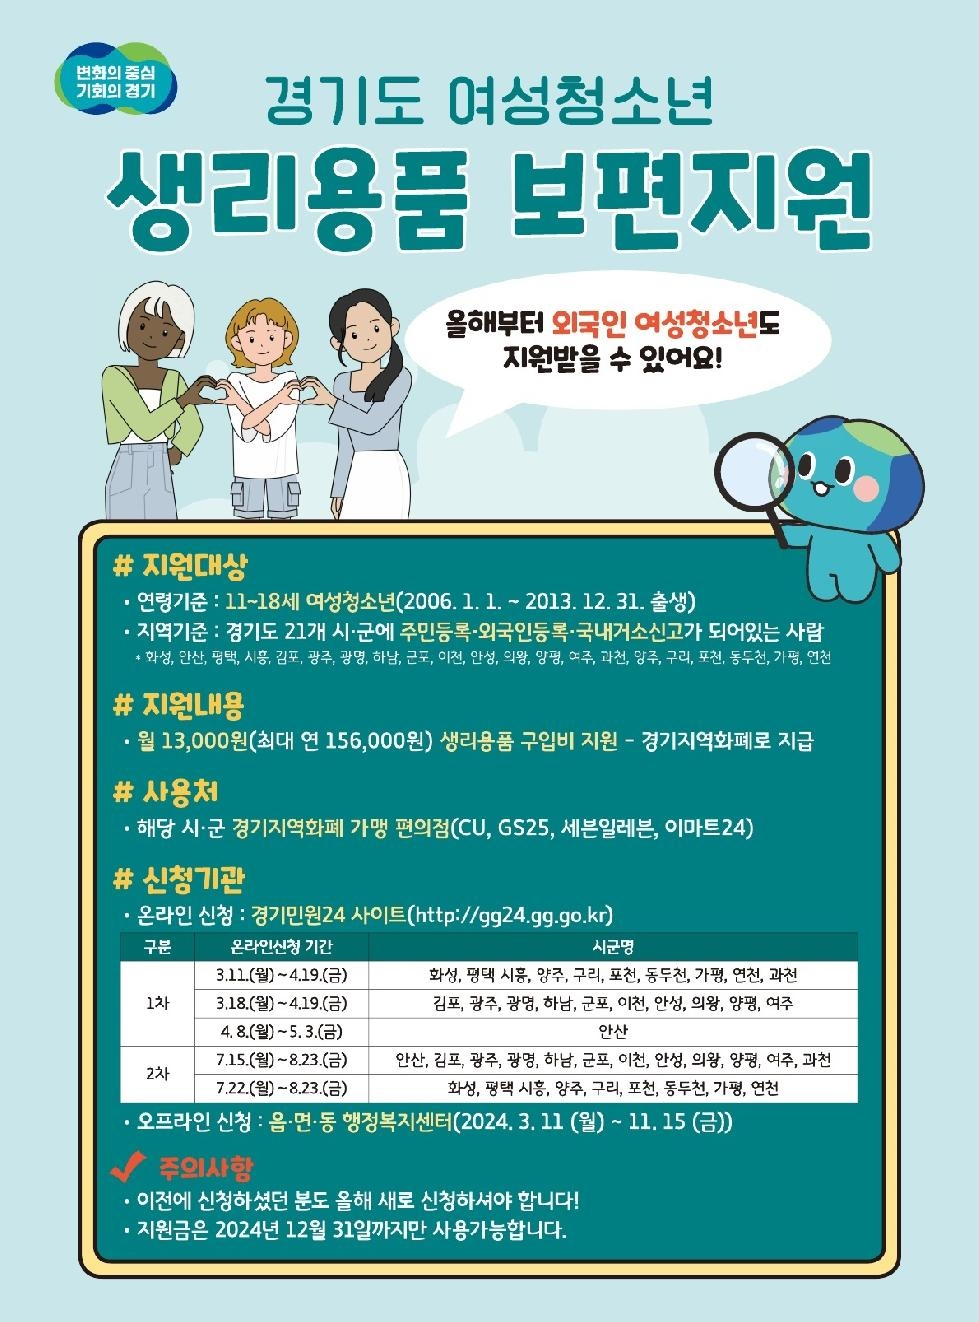 경기도, 여성청소년 생리용품 보편지원 11일부터 접수. 올해부터 외국인 